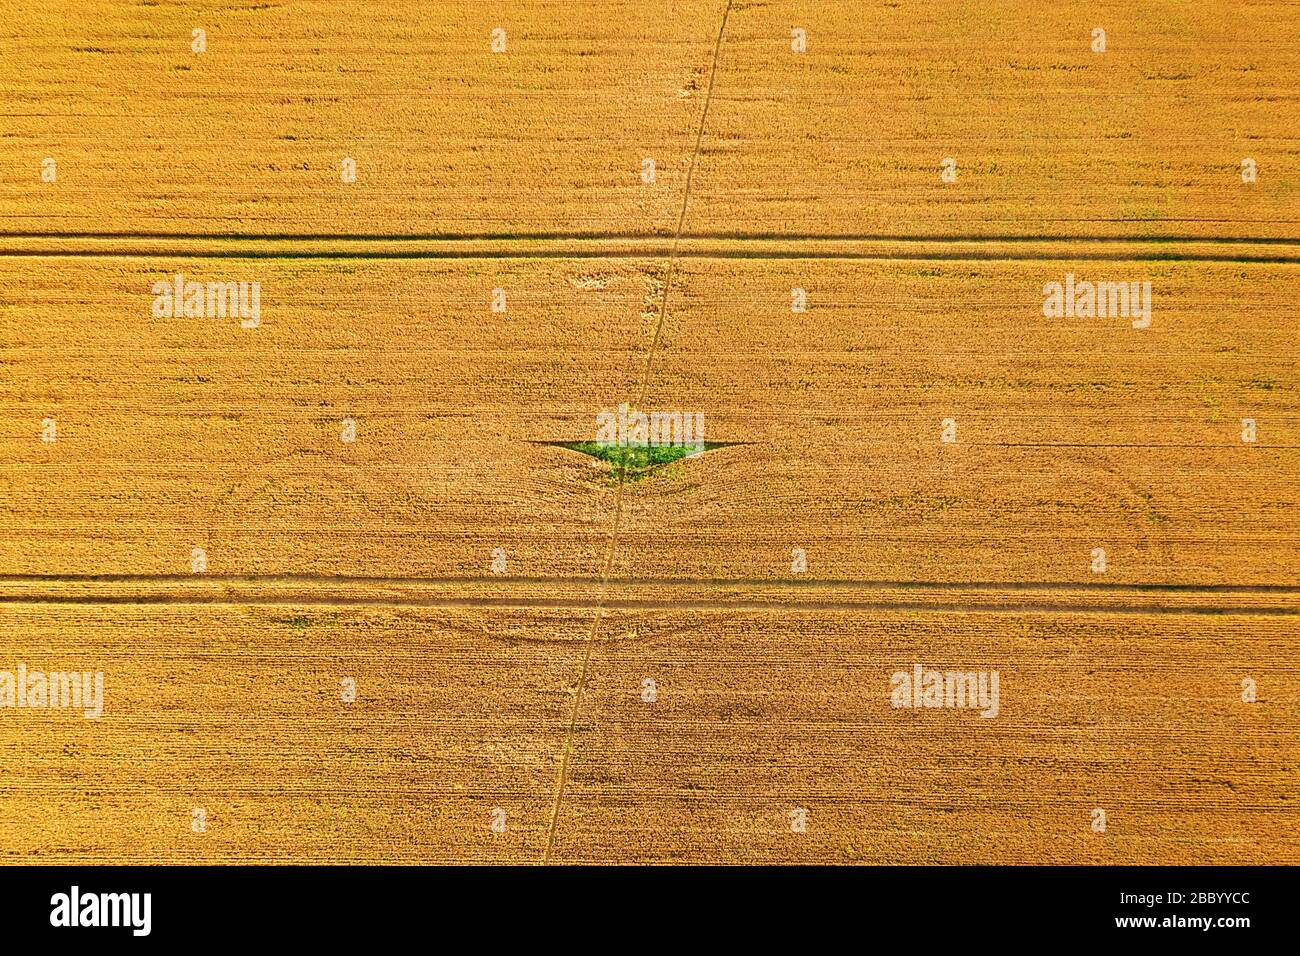 Foto aerea che sorvola il campo di grano giallo, pronta per la raccolta. Paesaggio agricolo Foto Stock